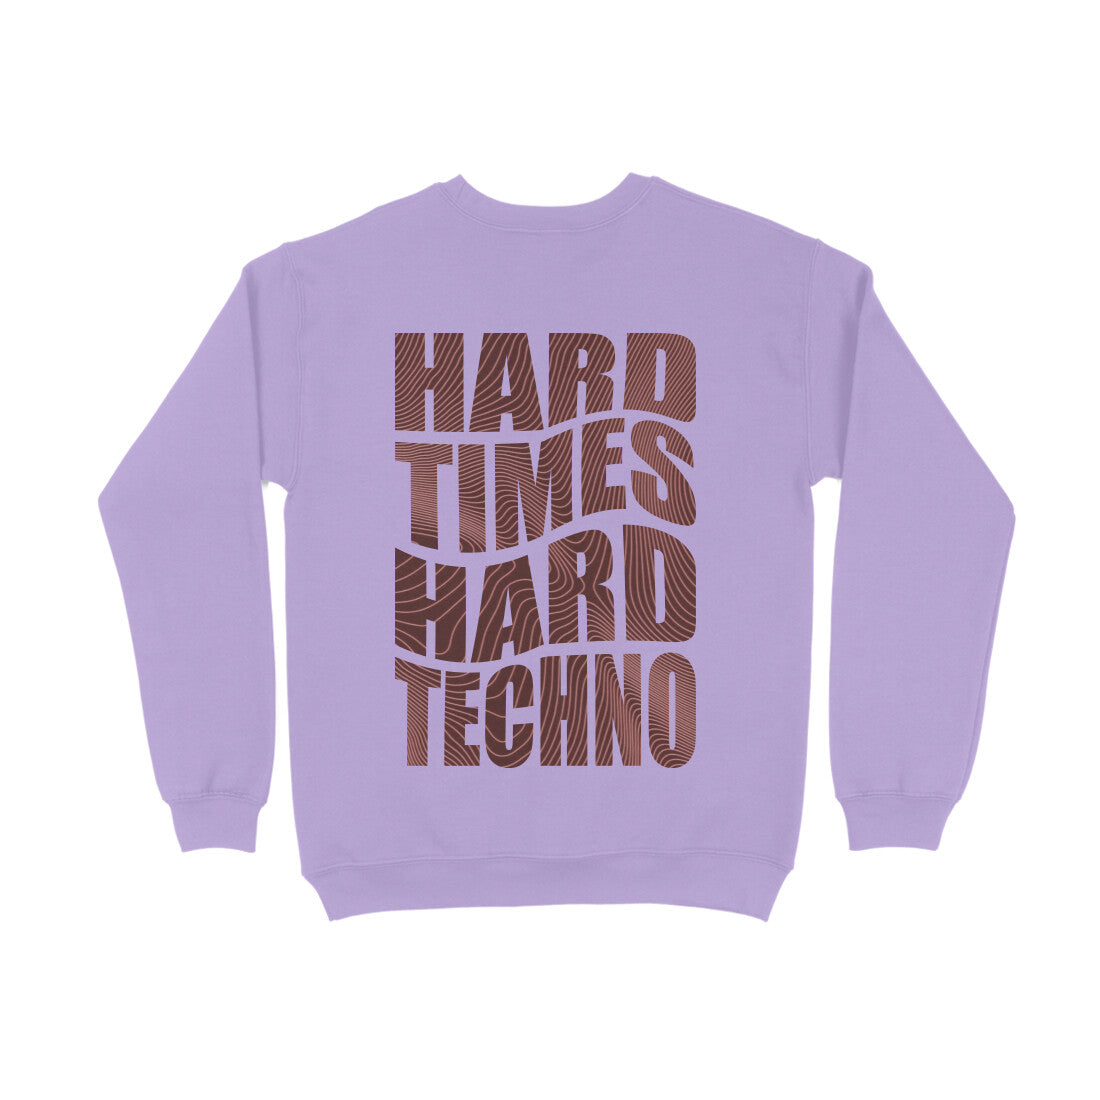 Hard Times Hard Techno